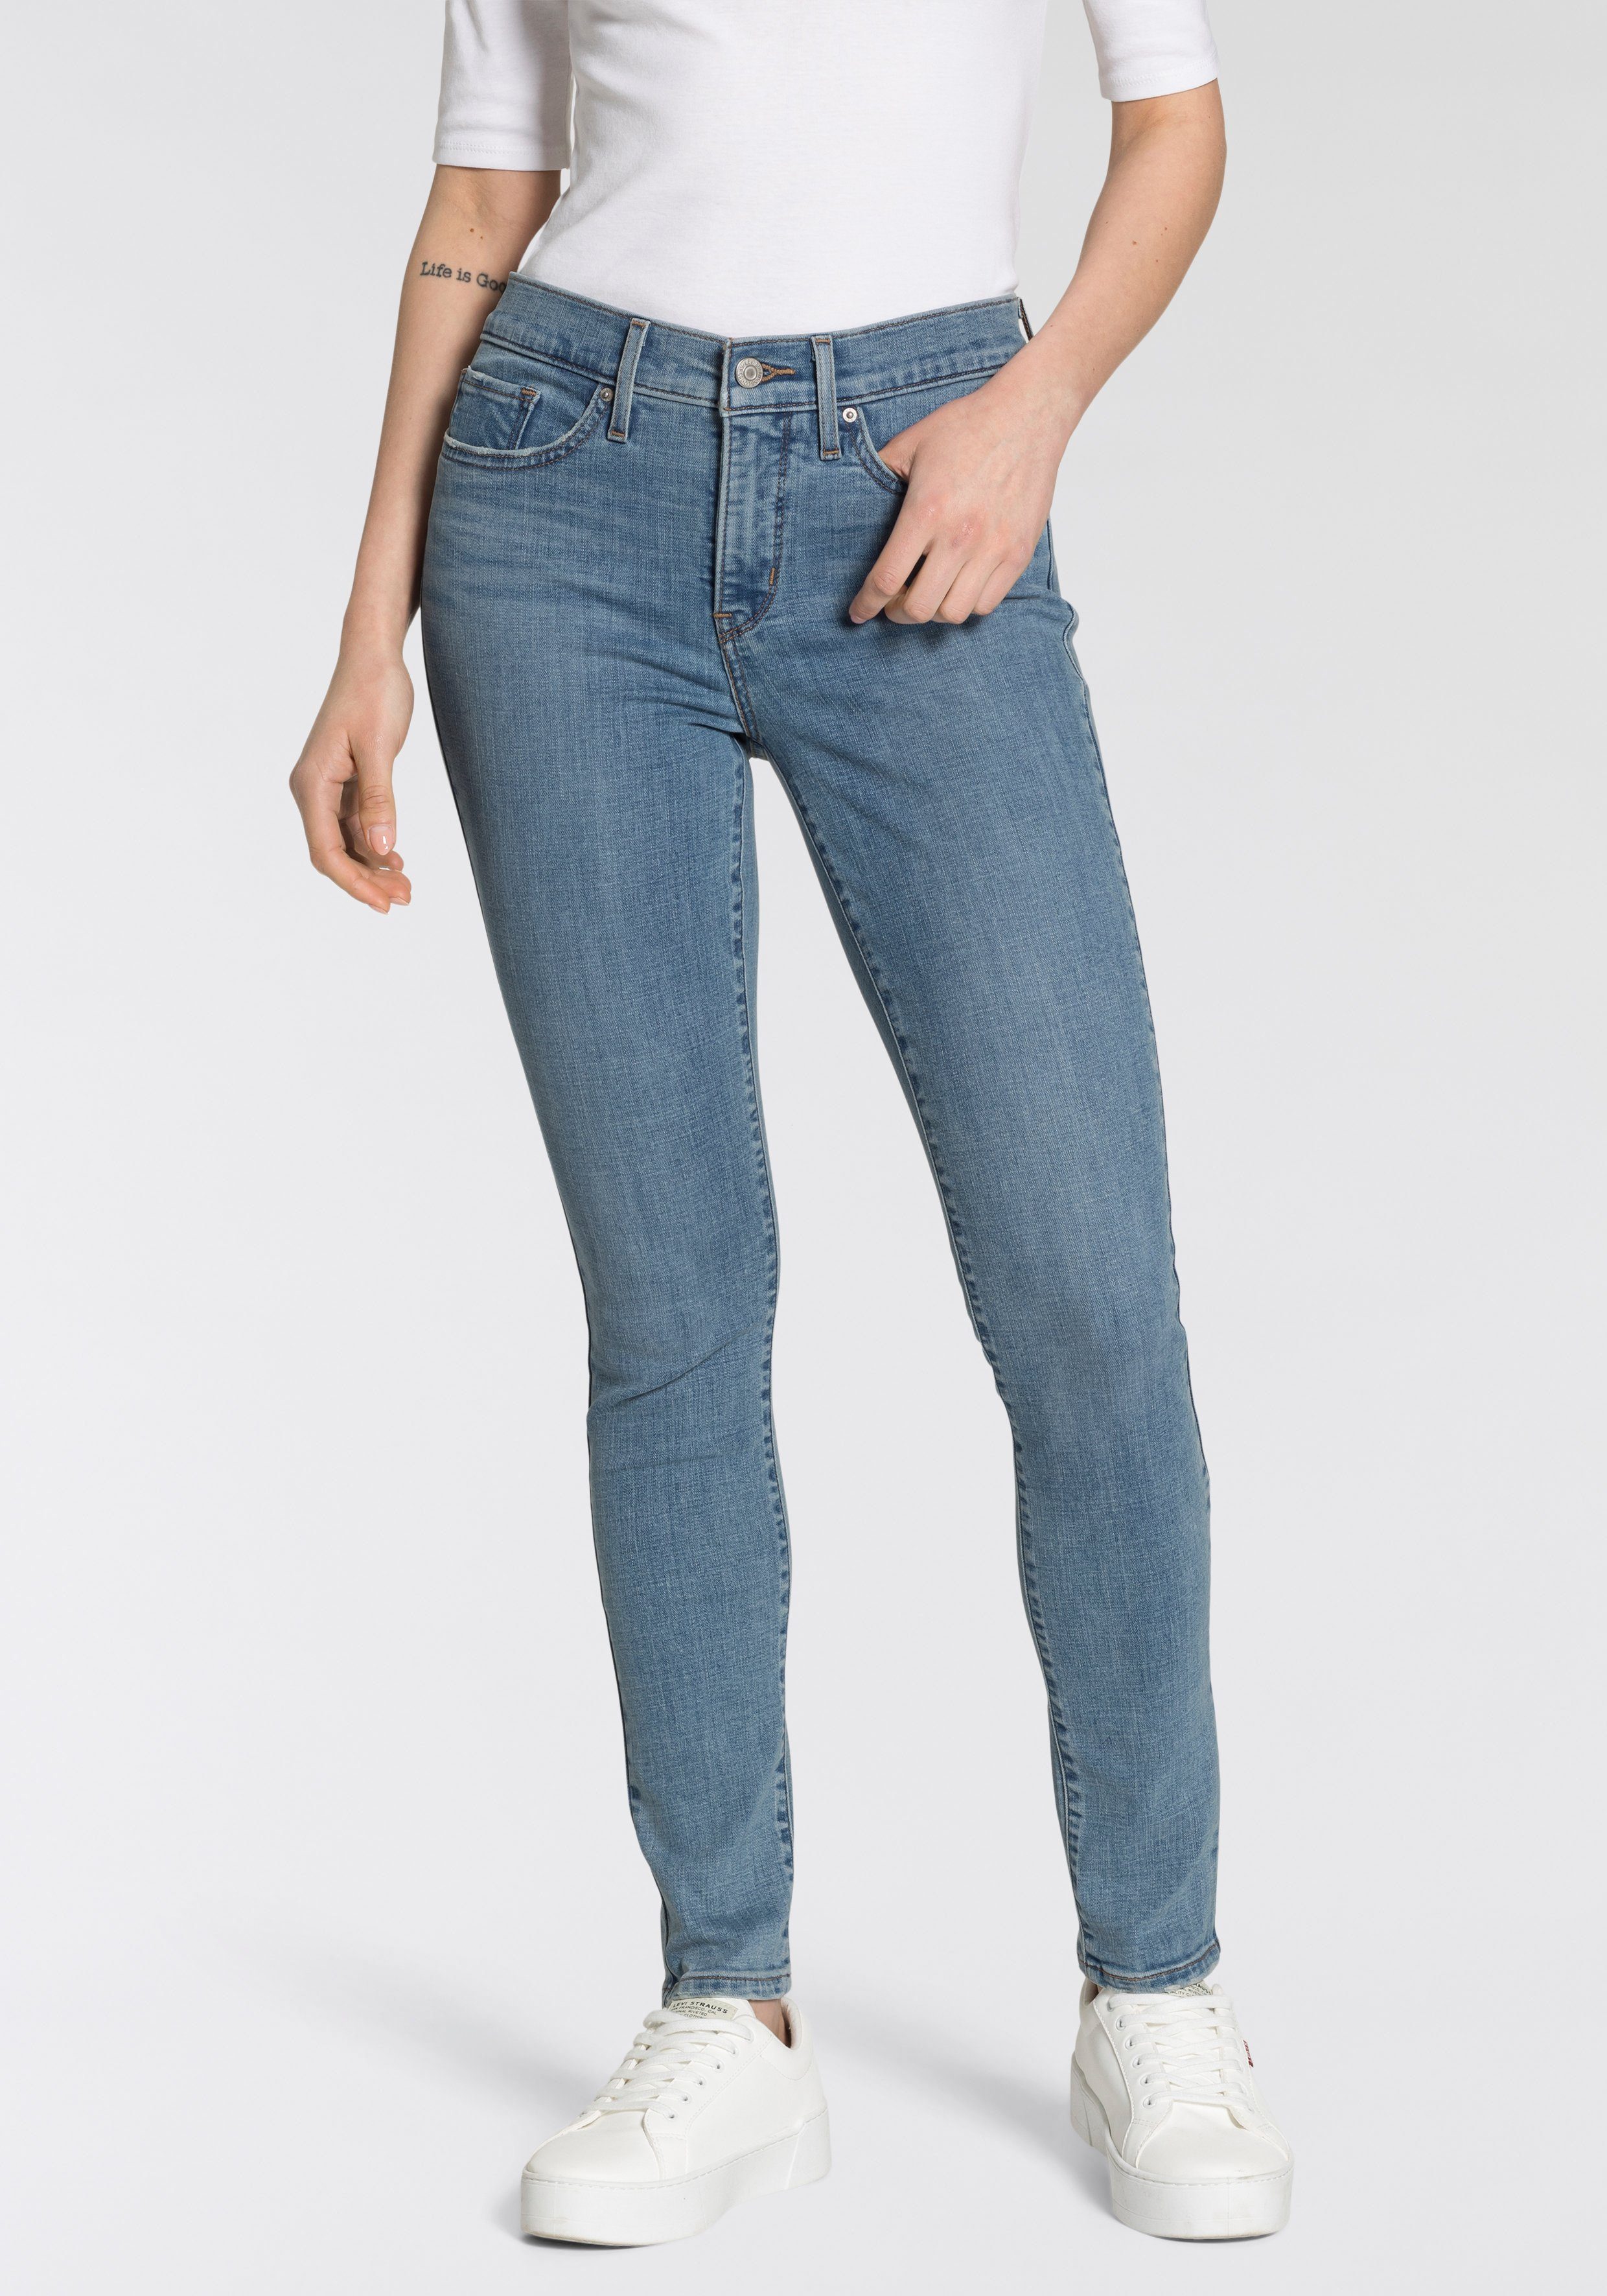 Günstige Levi's Jeans online kaufen » Reduziert im SALE | OTTO